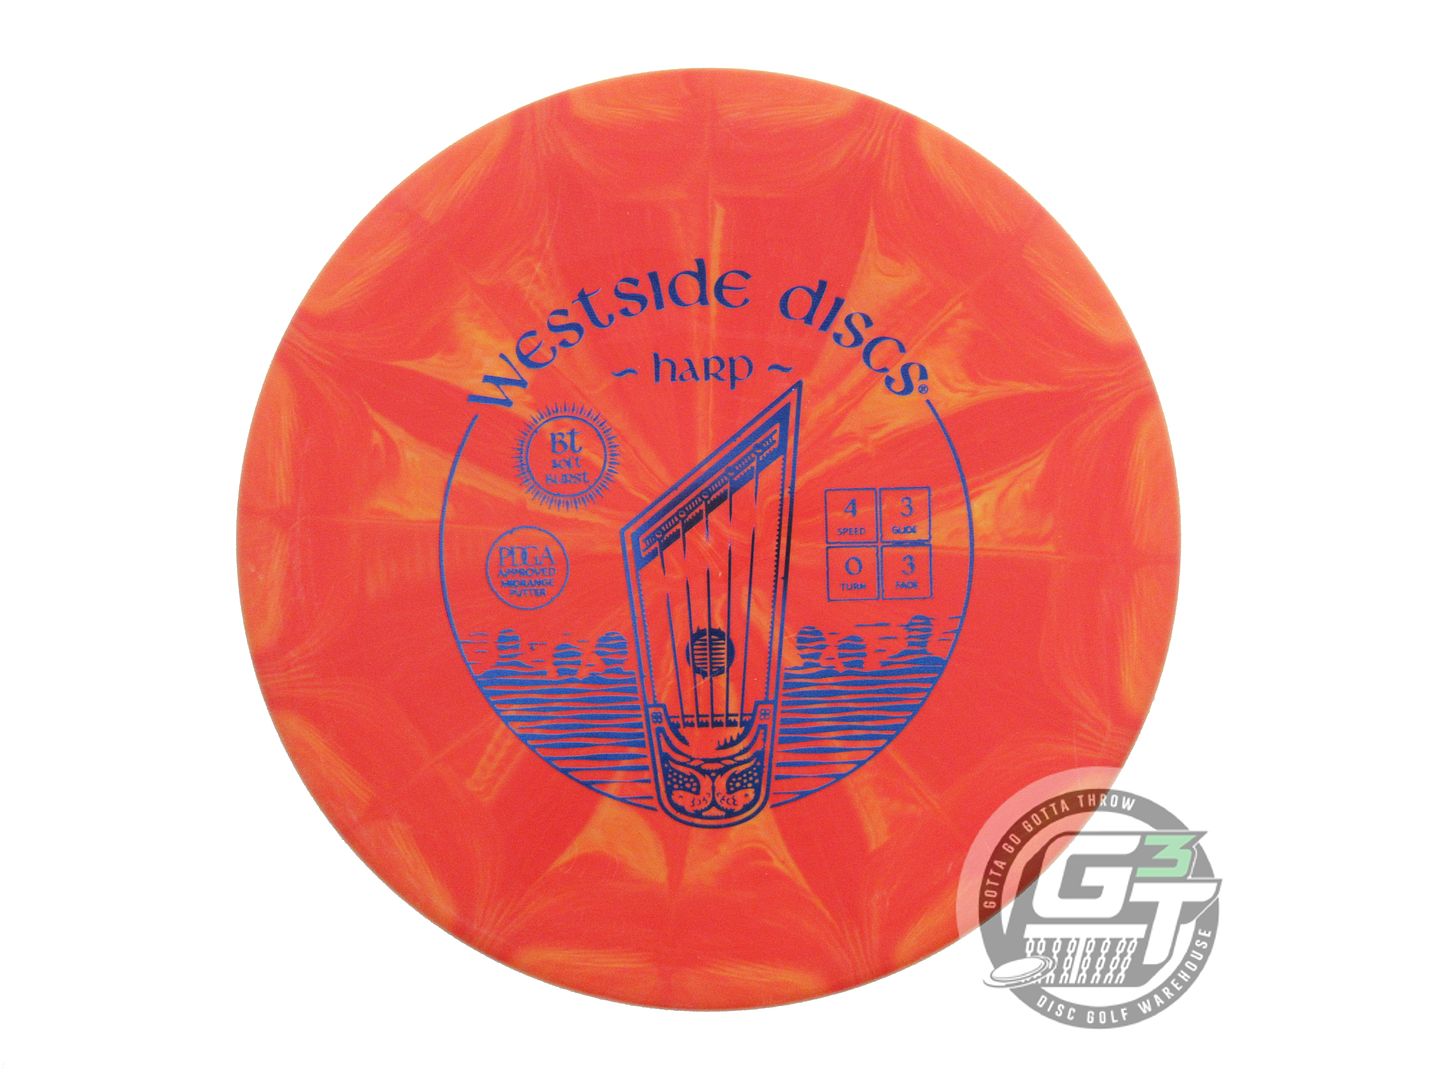 Westside BT Soft Burst Harp Putter Golf Disc (Individually Listed)